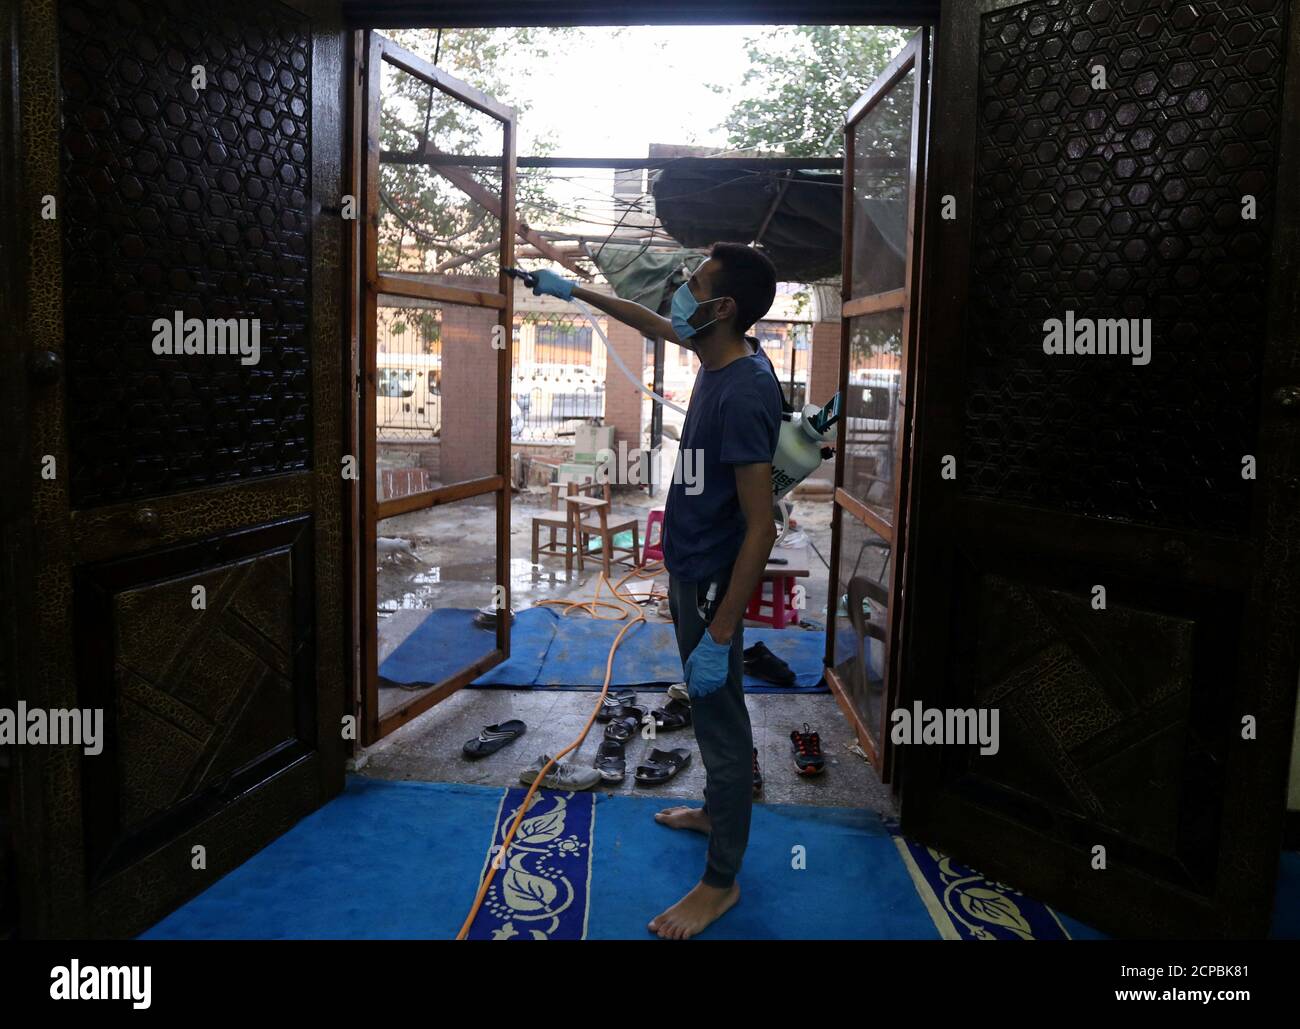 Un volontaire portant un masque facial vaporise du désinfectant à l'intérieur d'une mosquée alors qu'il est prêt à la prière après avoir été rouvert, après l'épidémie de coronavirus (COVID-19), au Caire, en Égypte, le 26 juin 2020. REUTERS/Mohamed Abd El Ghany Banque D'Images